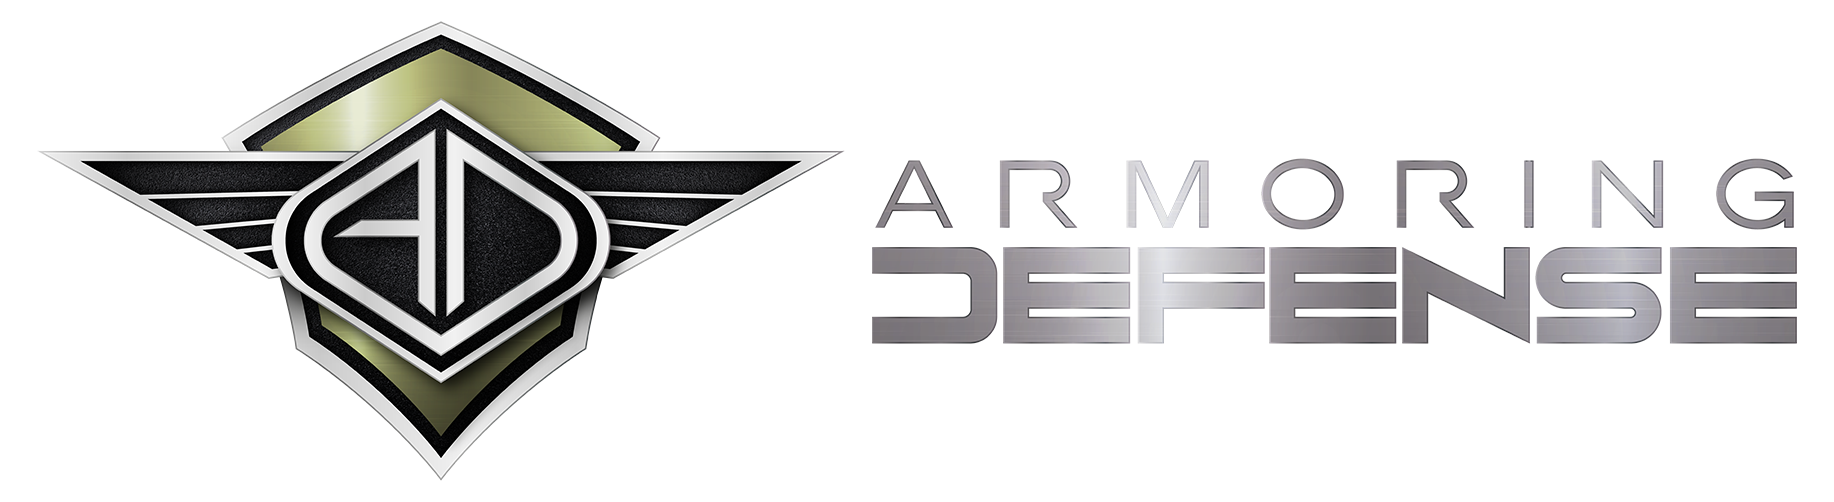 Armoring Defense